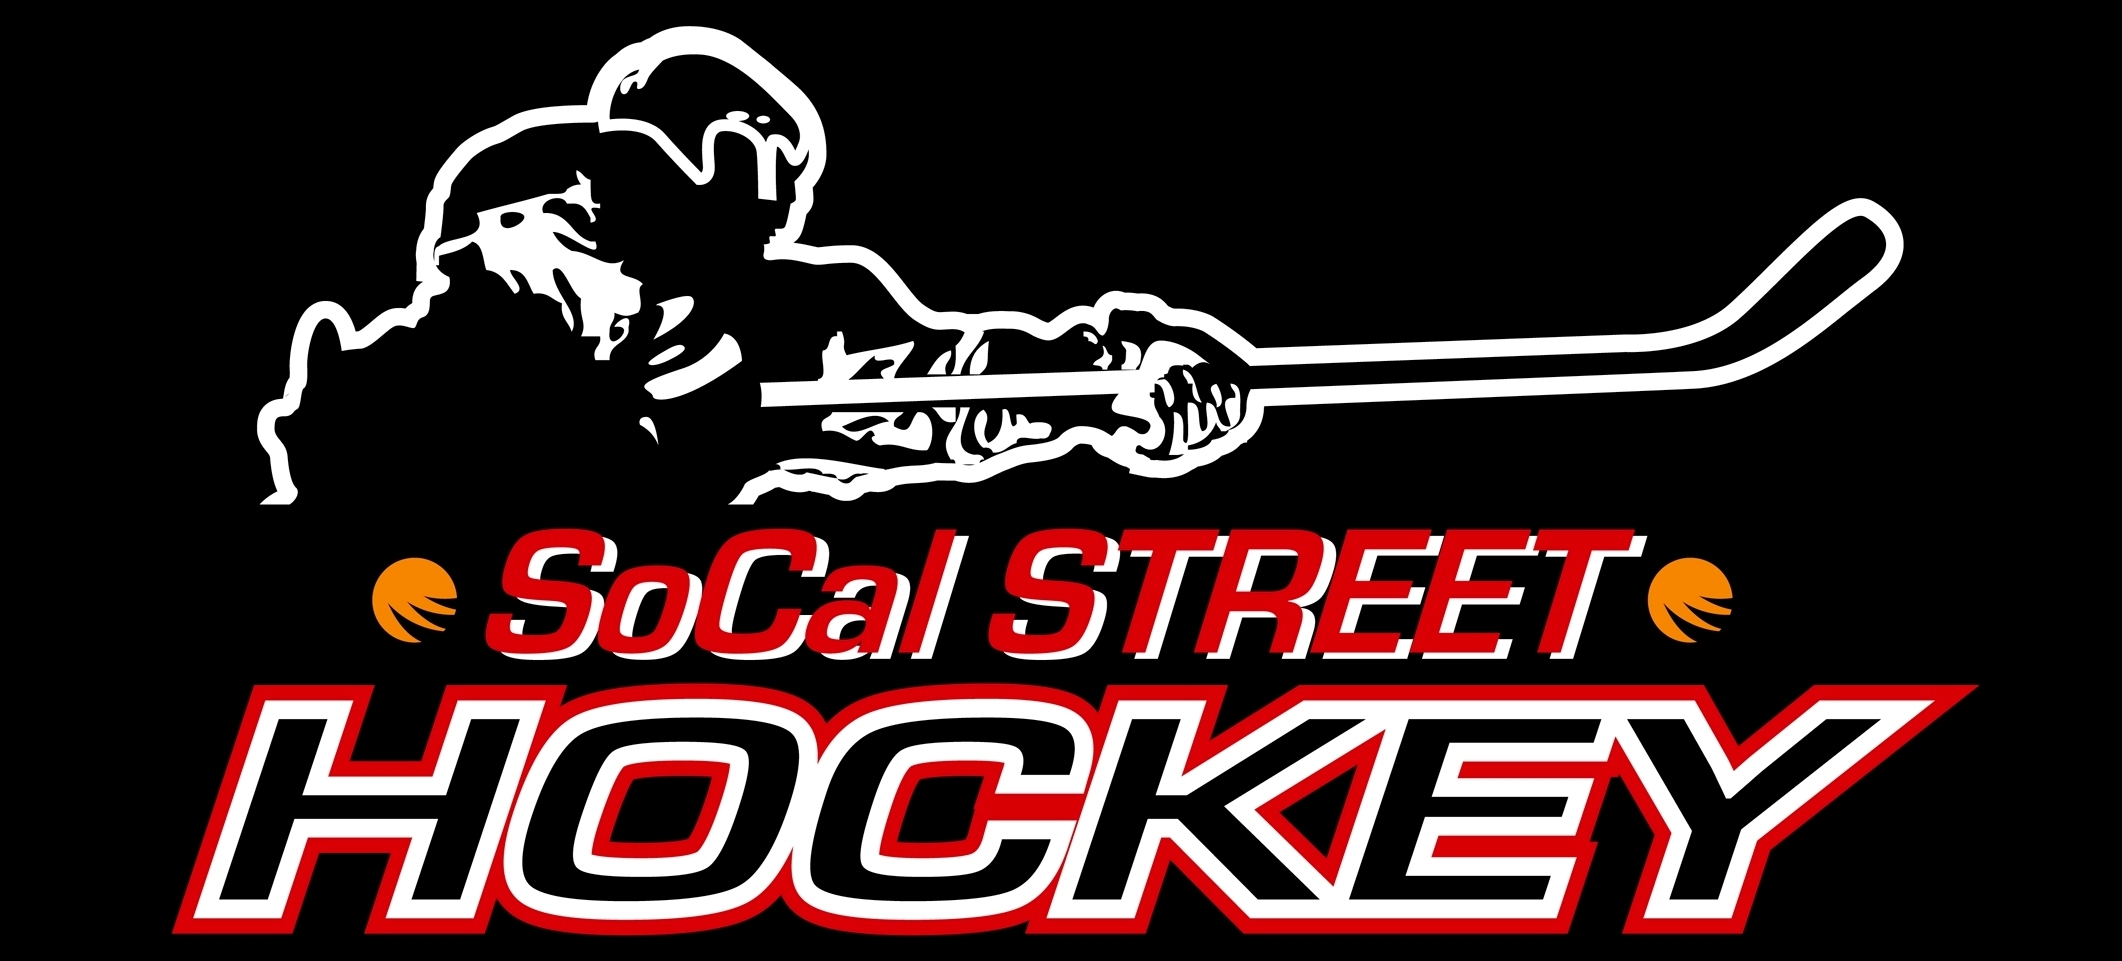 SocalStreetHockey_Logo__7-8-13_.jpg